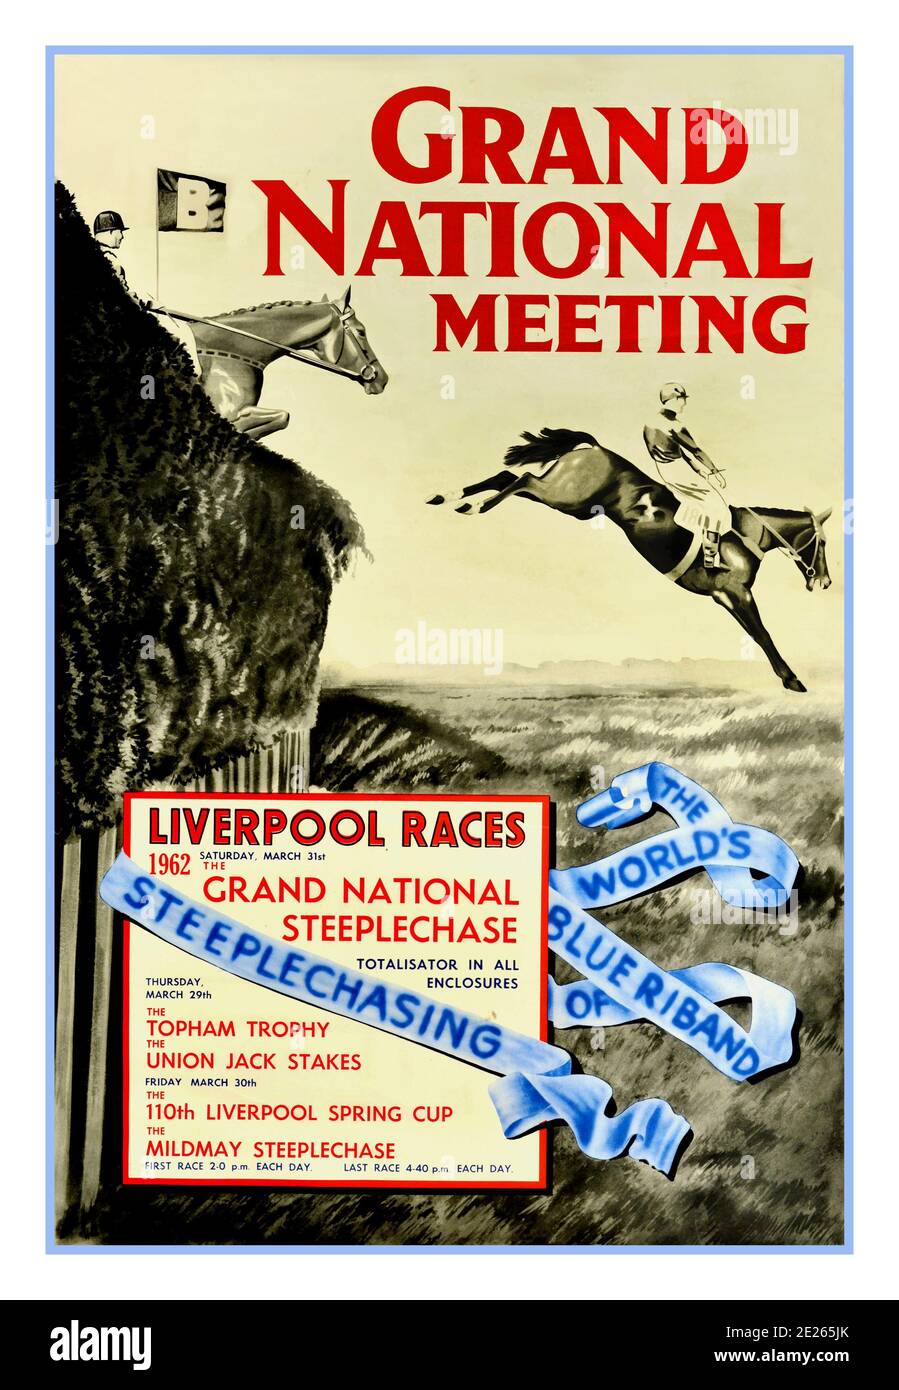 1962 AFFICHE publicitaire DE sport vintage grand NATIONAL STEEPLECHASE pour les courses de chevaux, intitulé Grand National Meeting - The World's Blue Riband of Steeplechaing, courses de Liverpool, dessin au charbon de bois de deux chevaux et jockeys en action, sautant sur un obstacle sur un cours steeplechase. Le Grand National est une course de chevaux National Hunt qui se tient chaque année à l'hippodrome d'Aintree, près de Liverpool, en Angleterre. C'est la course de saut la plus précieuse d'Europe. L'événement a eu lieu le 31 mars 1962, samedi. Imprimé par Turner et Dunnet Limited, Liverpool. ROYAUME-UNI, 1962 Banque D'Images